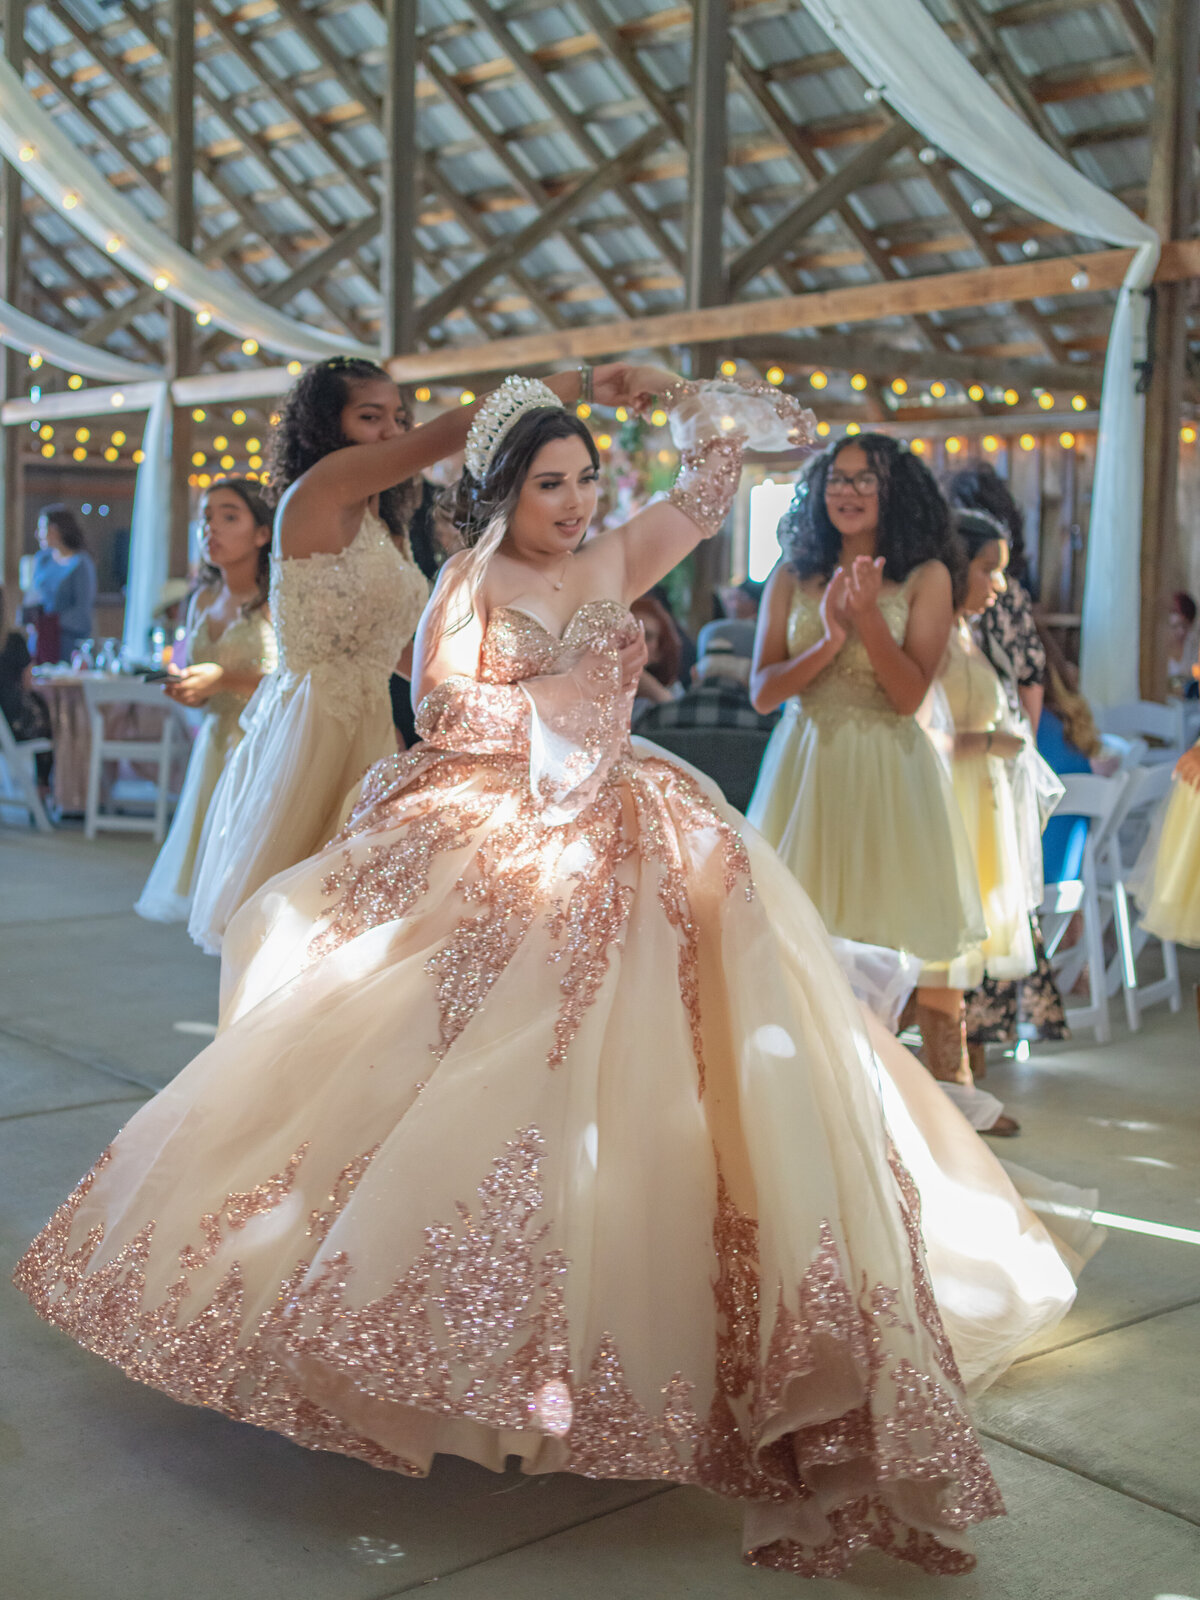 quinceañera dancing at the reception